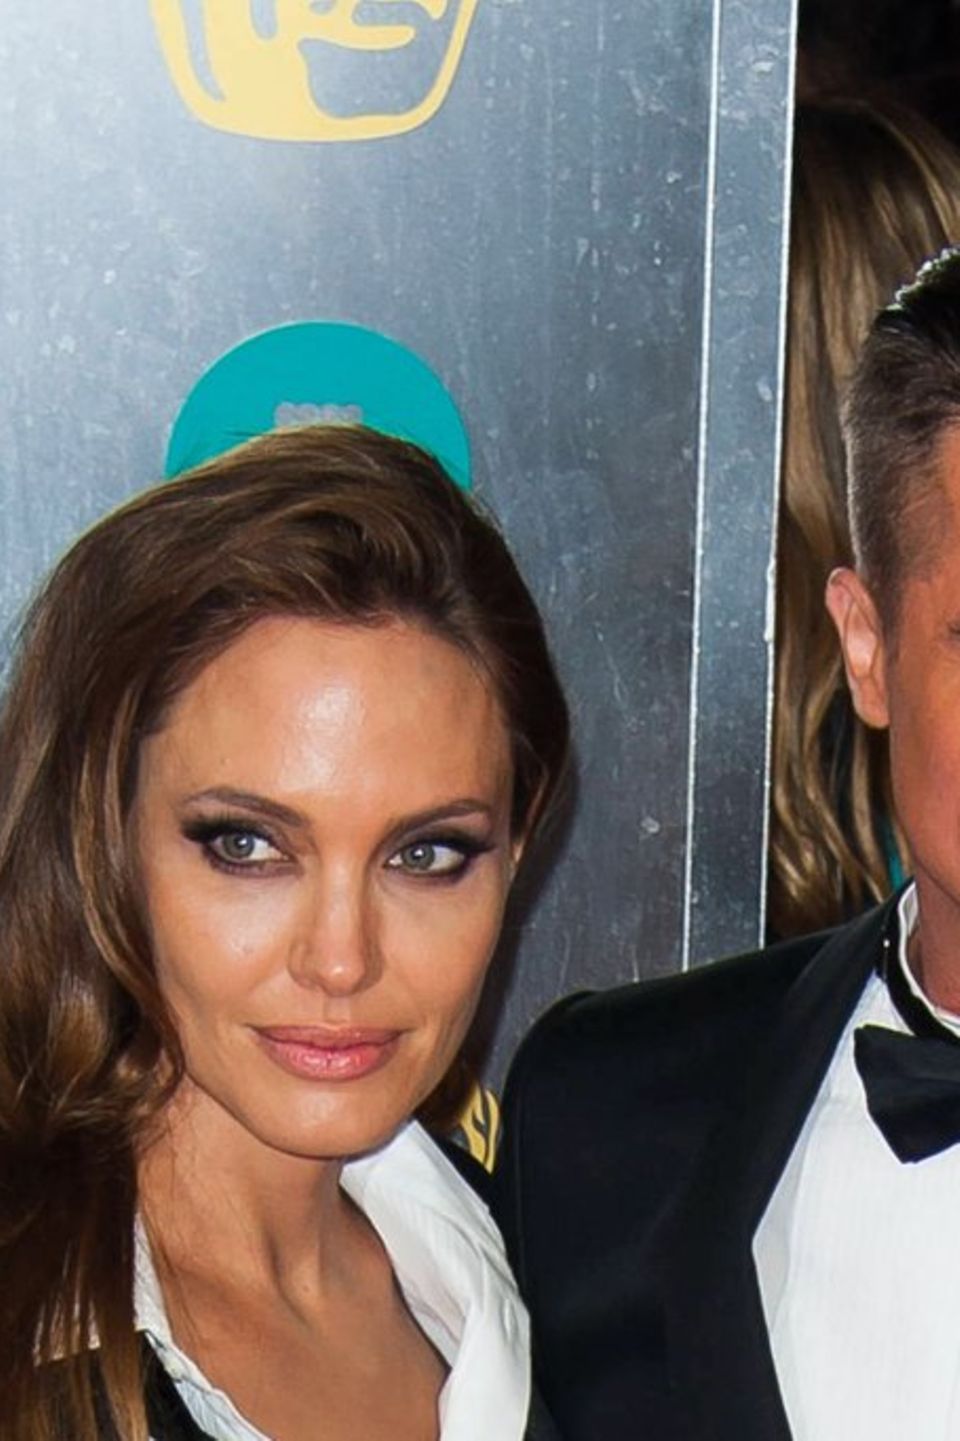 Angelina Jolie und Brad Pitt galten lange als Hollywood-Traumpaar.